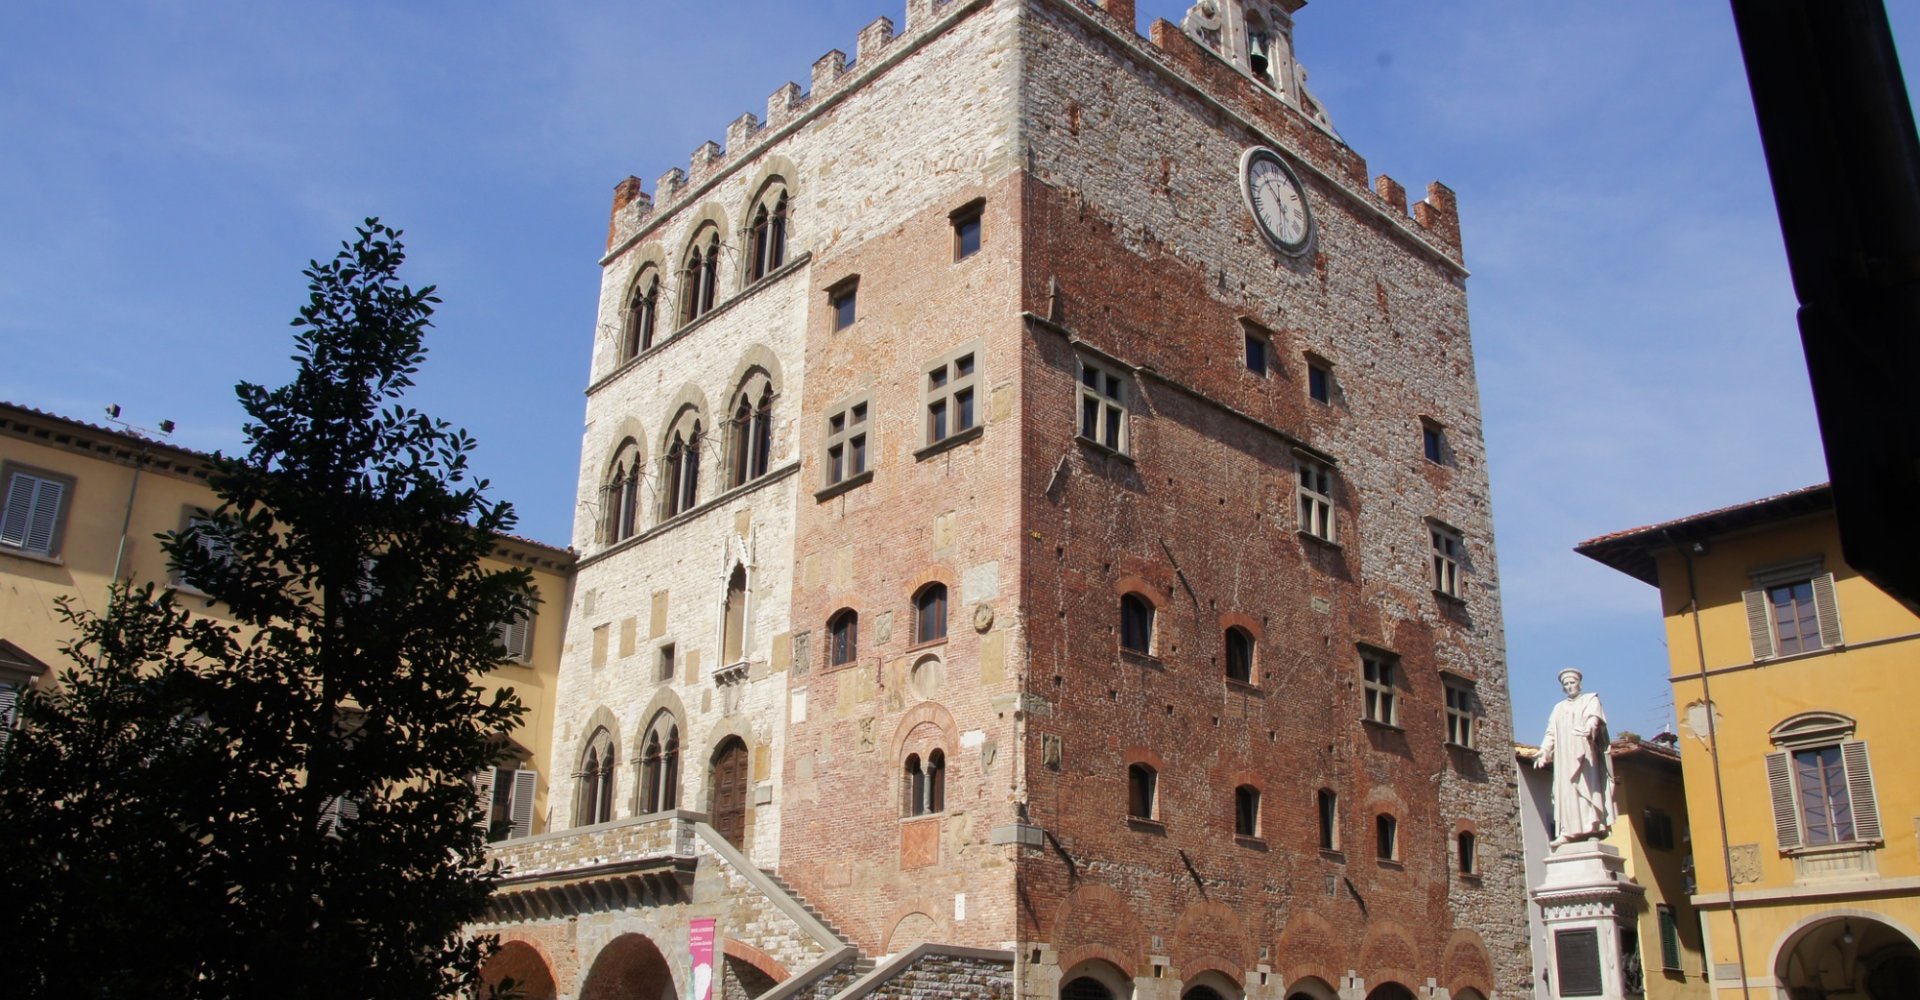 Palazzo Pretorio of Prato